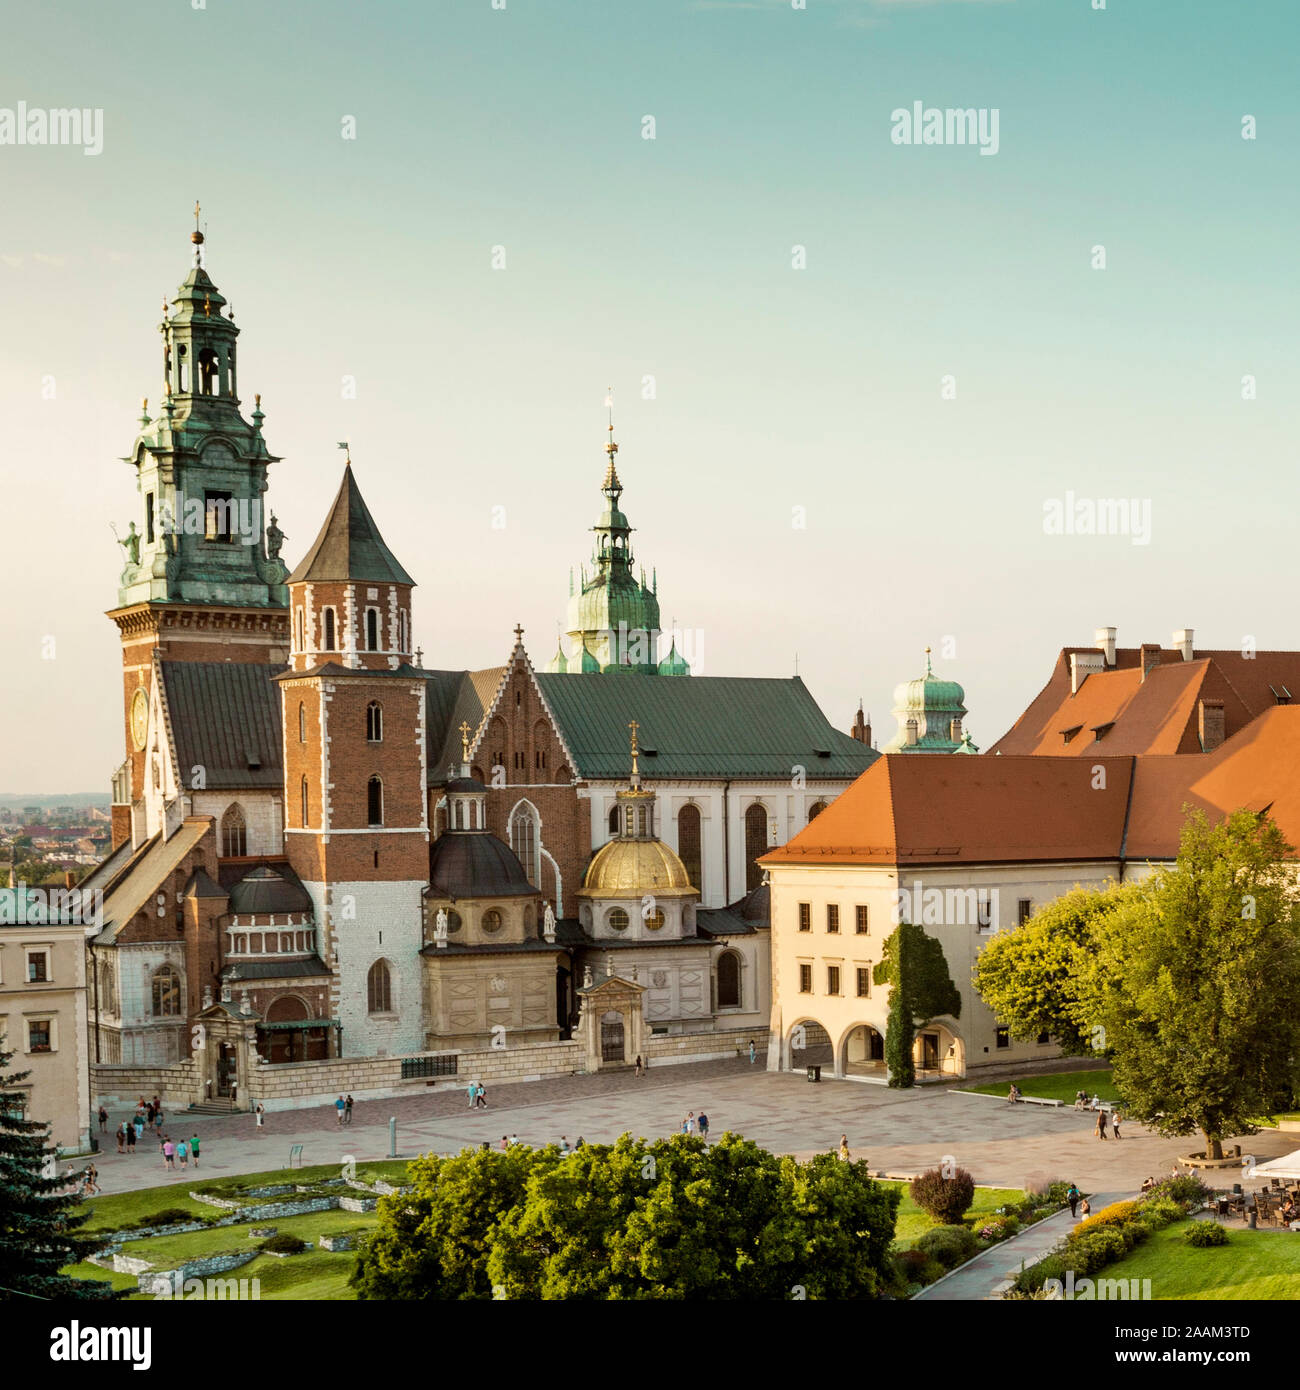 Wawel castle in Krakow, Poland Stock Photo